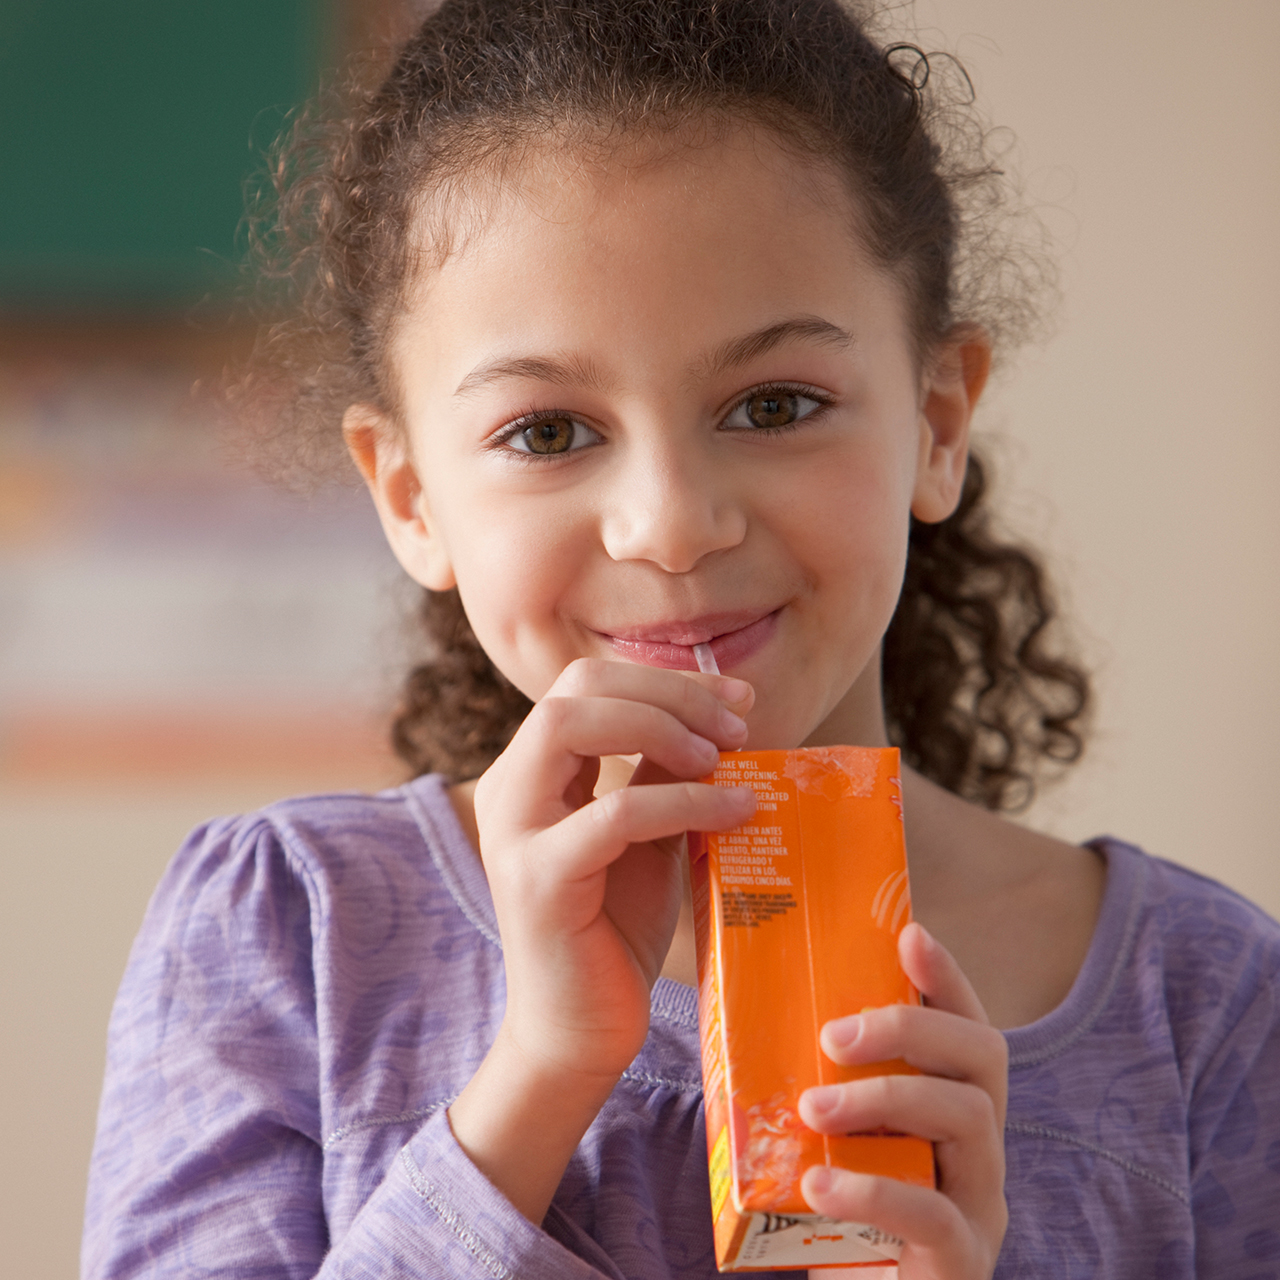 Una niña sonriente bebiendo jugo en una cajita